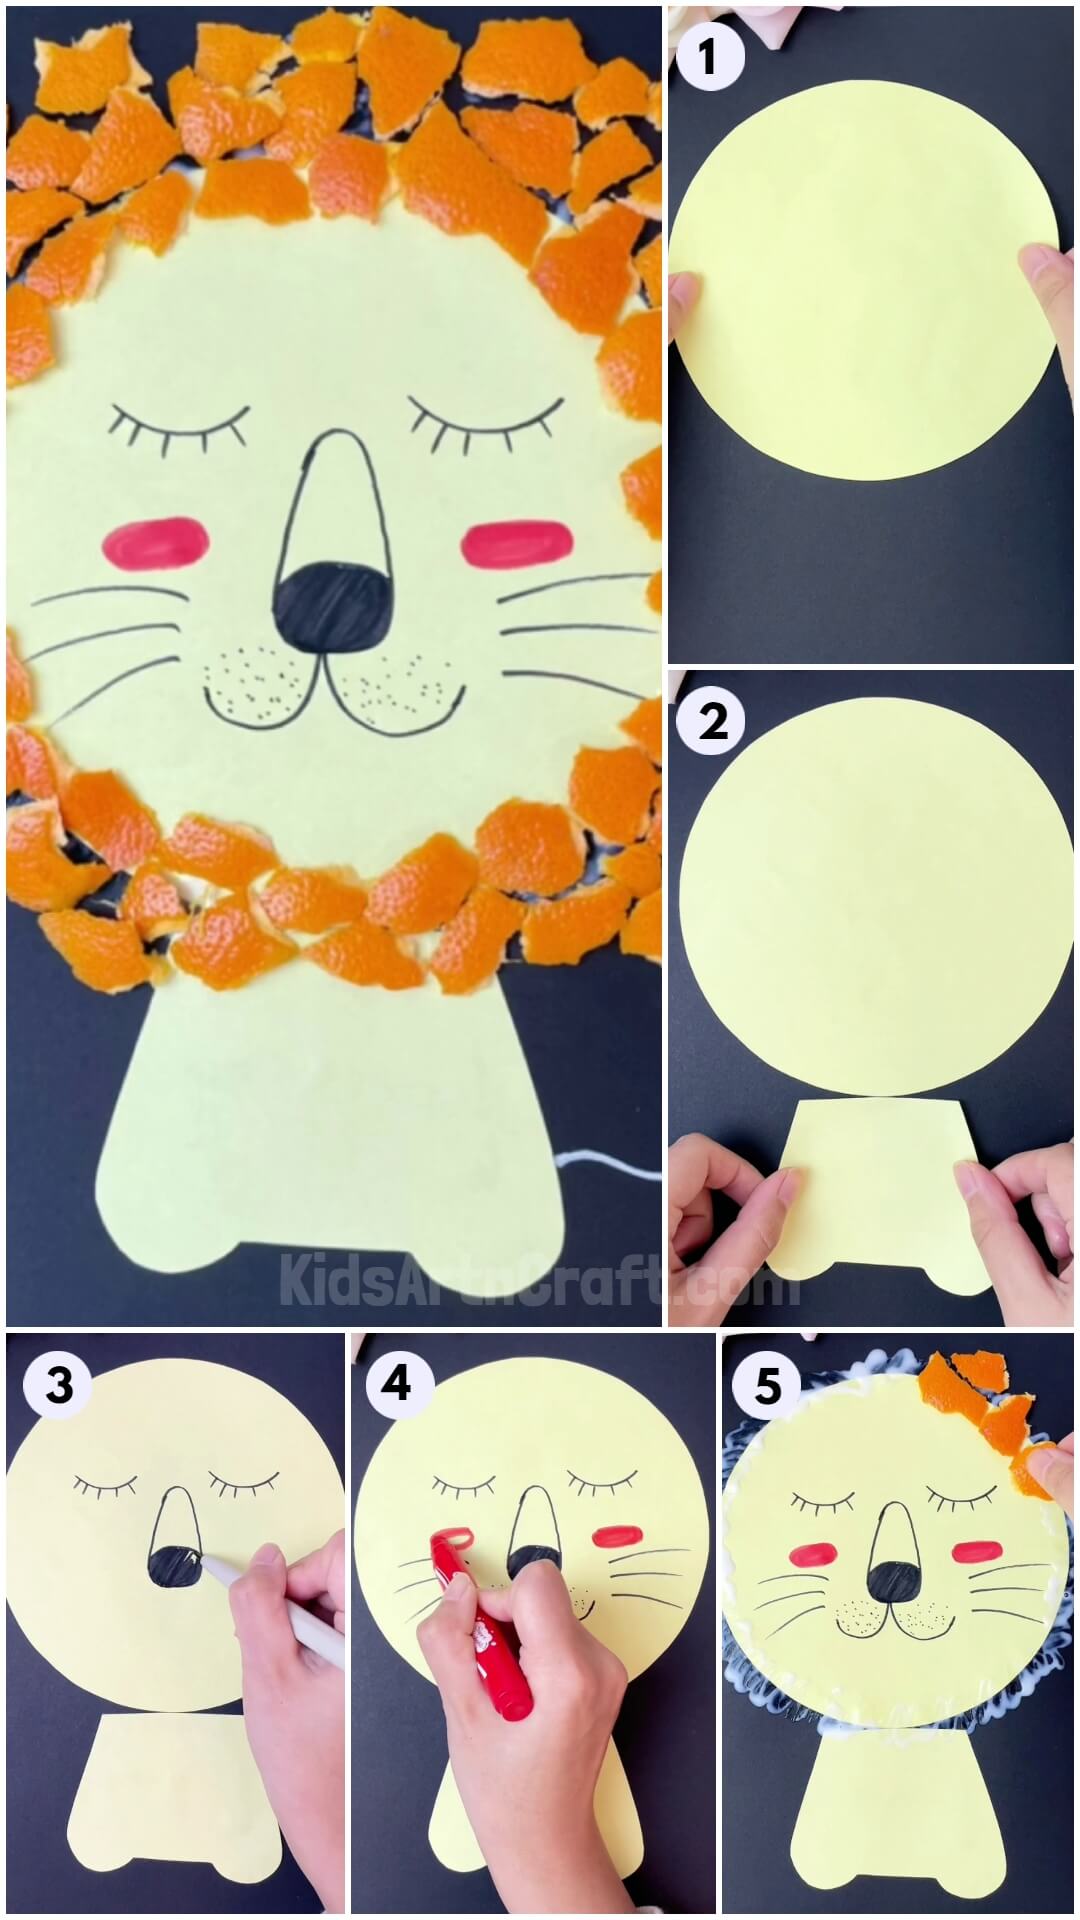 DIY Lion Face Craft Using Orang Peel